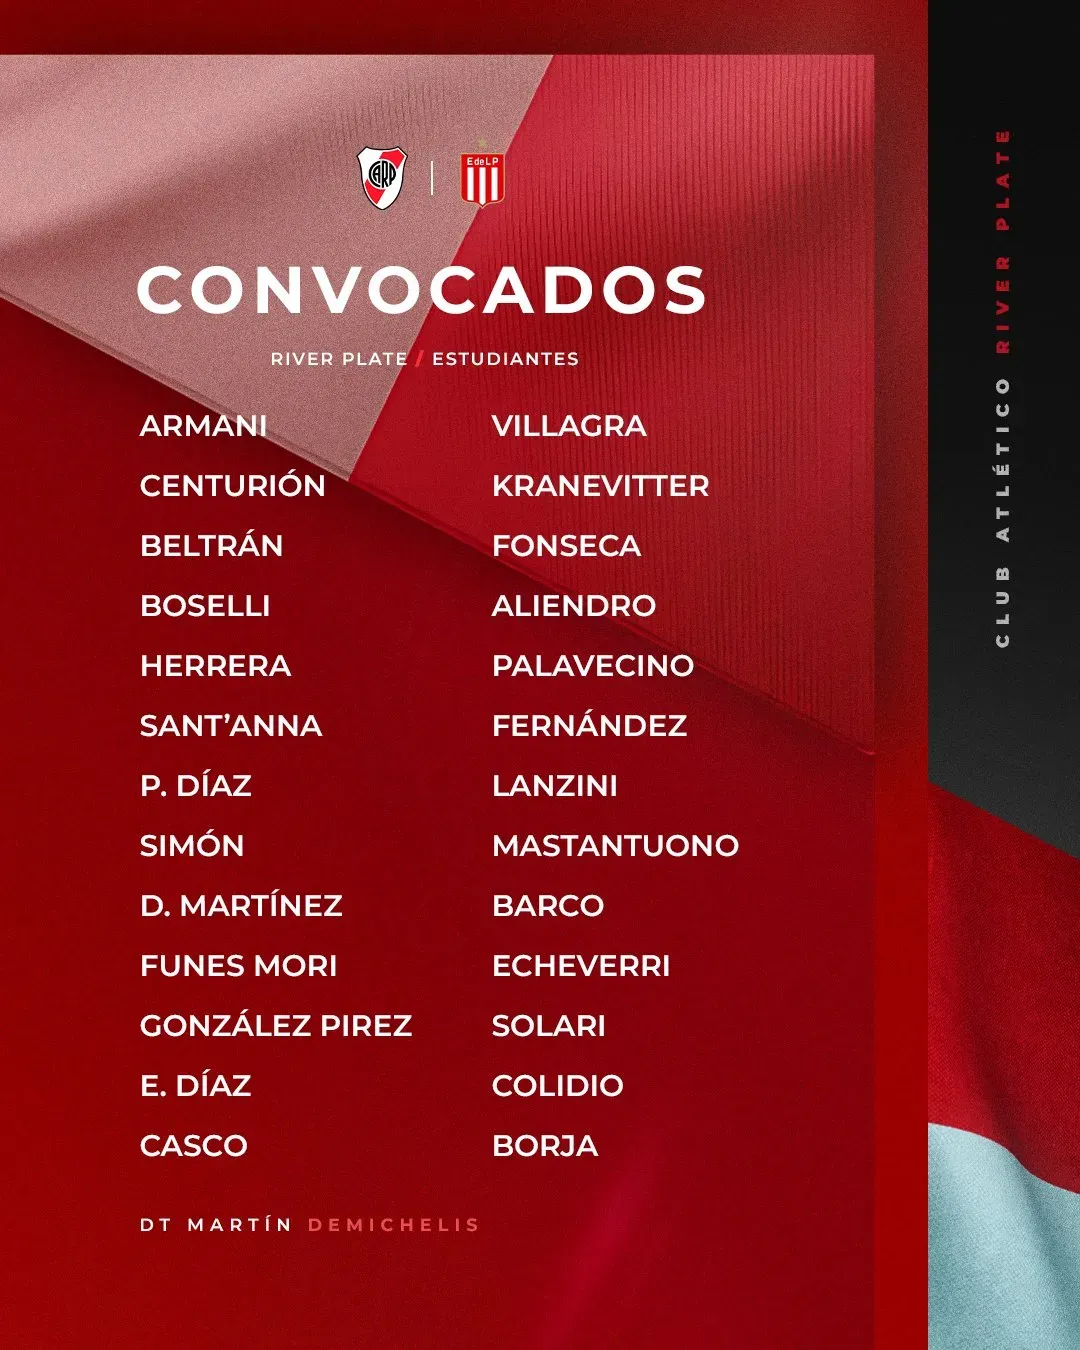 La lista de convocados de River para la final. (Foto: Prensa River).